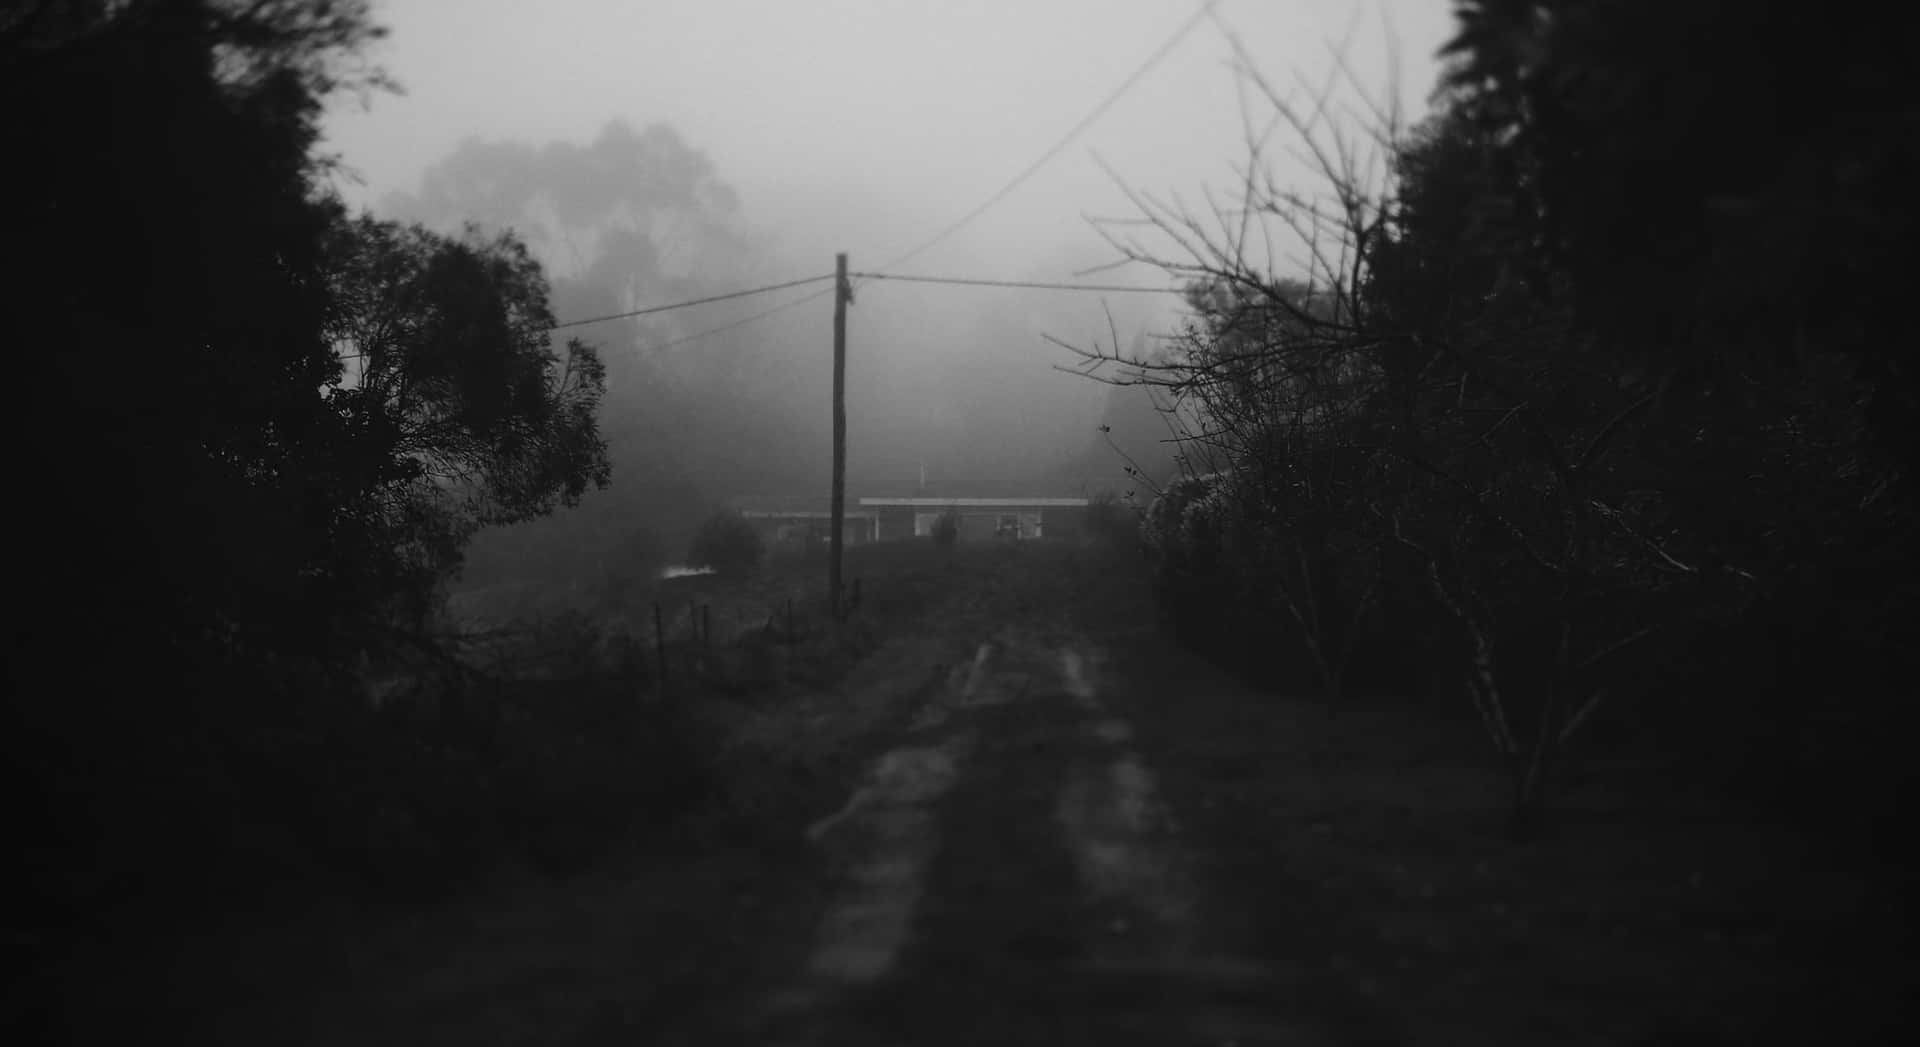 Dark Depressing Foggy Weather Background